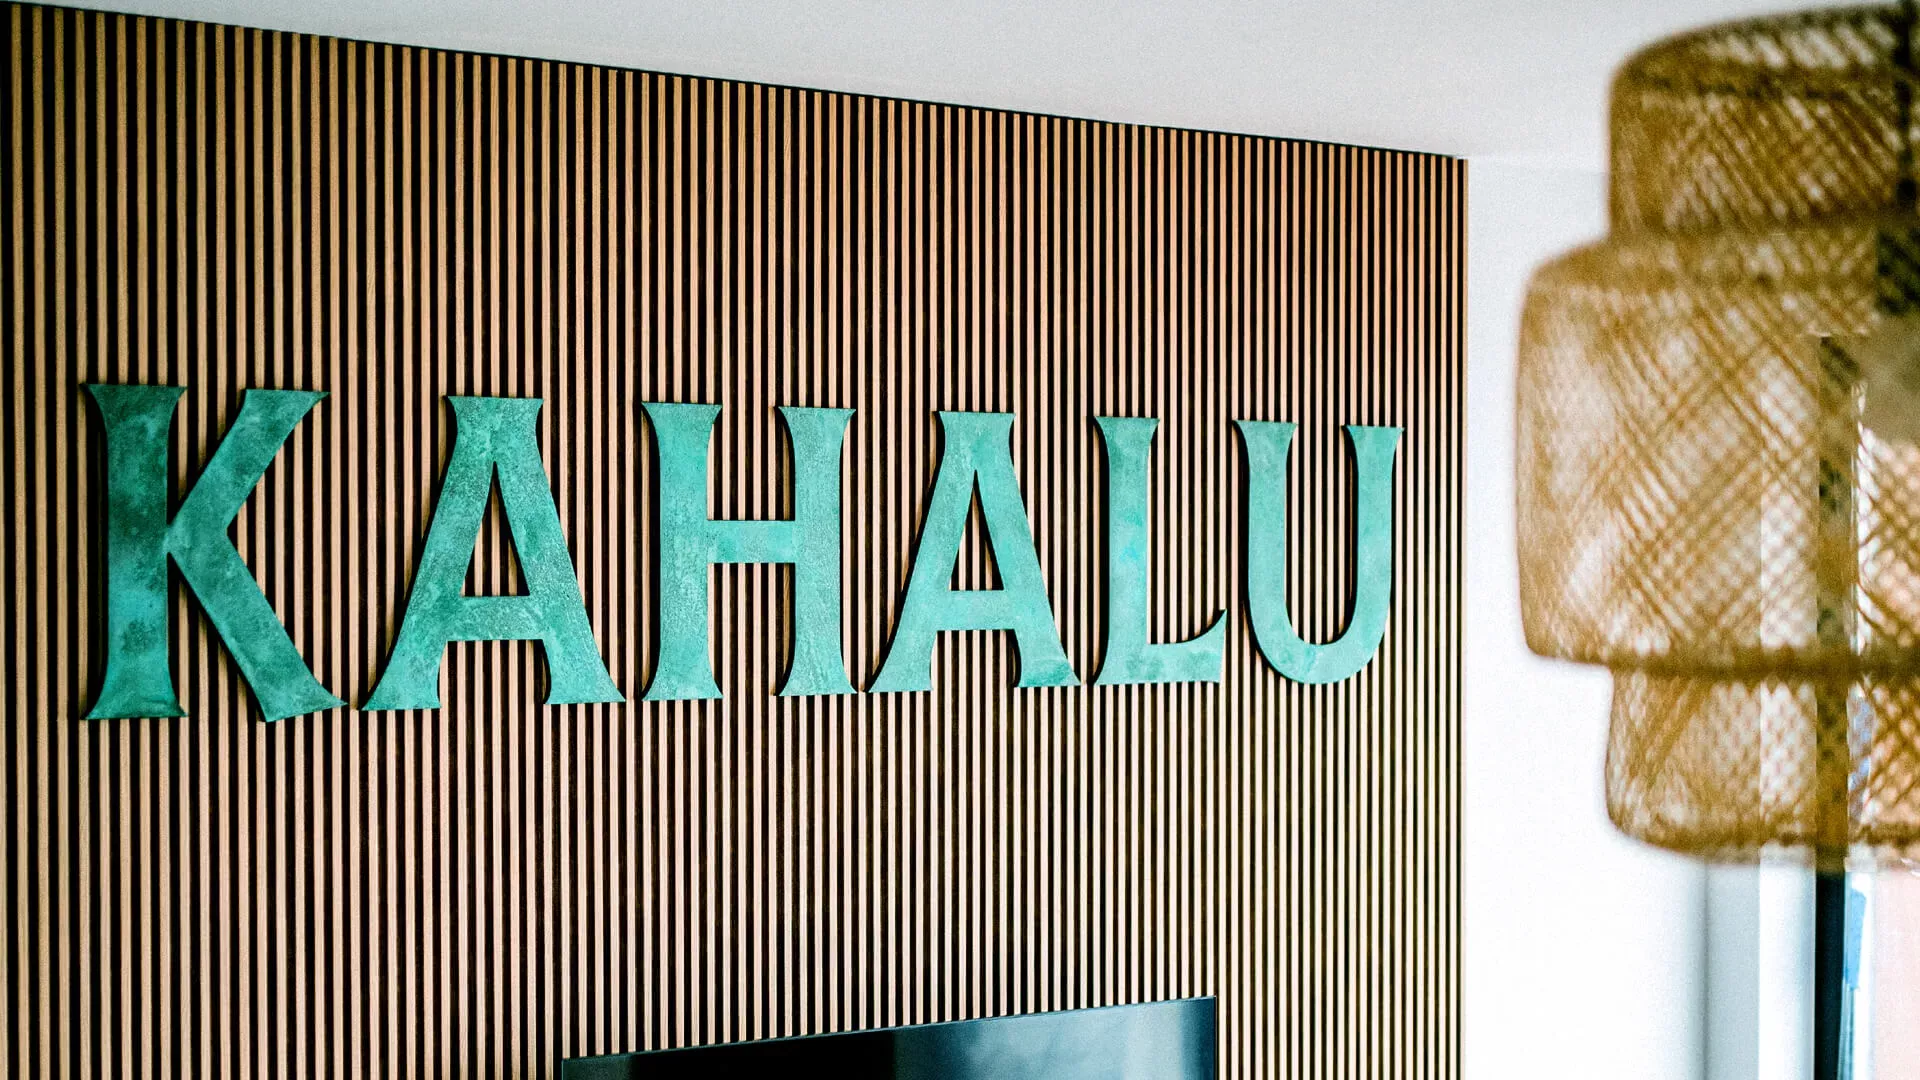 Kahalu - Metallbeschriftung im industriellen Stil mit Patina-Finish